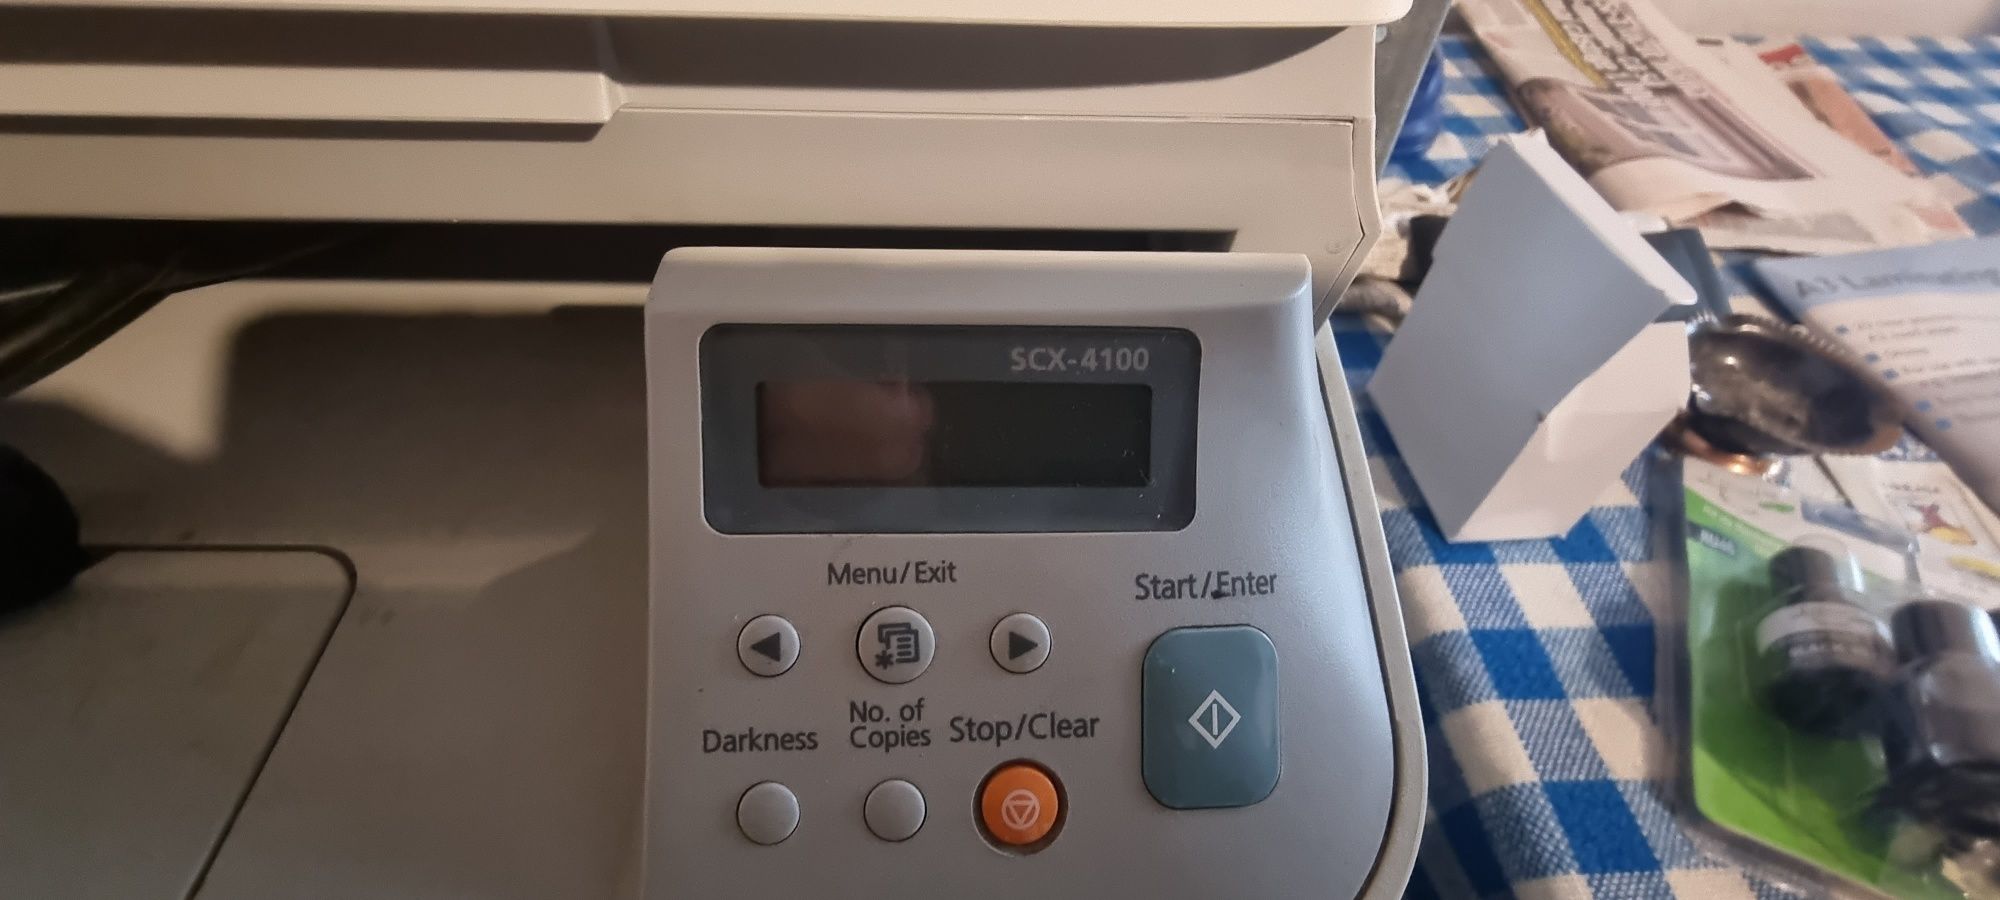 Imprimanta multifuncțională laser Samsung scx-4100